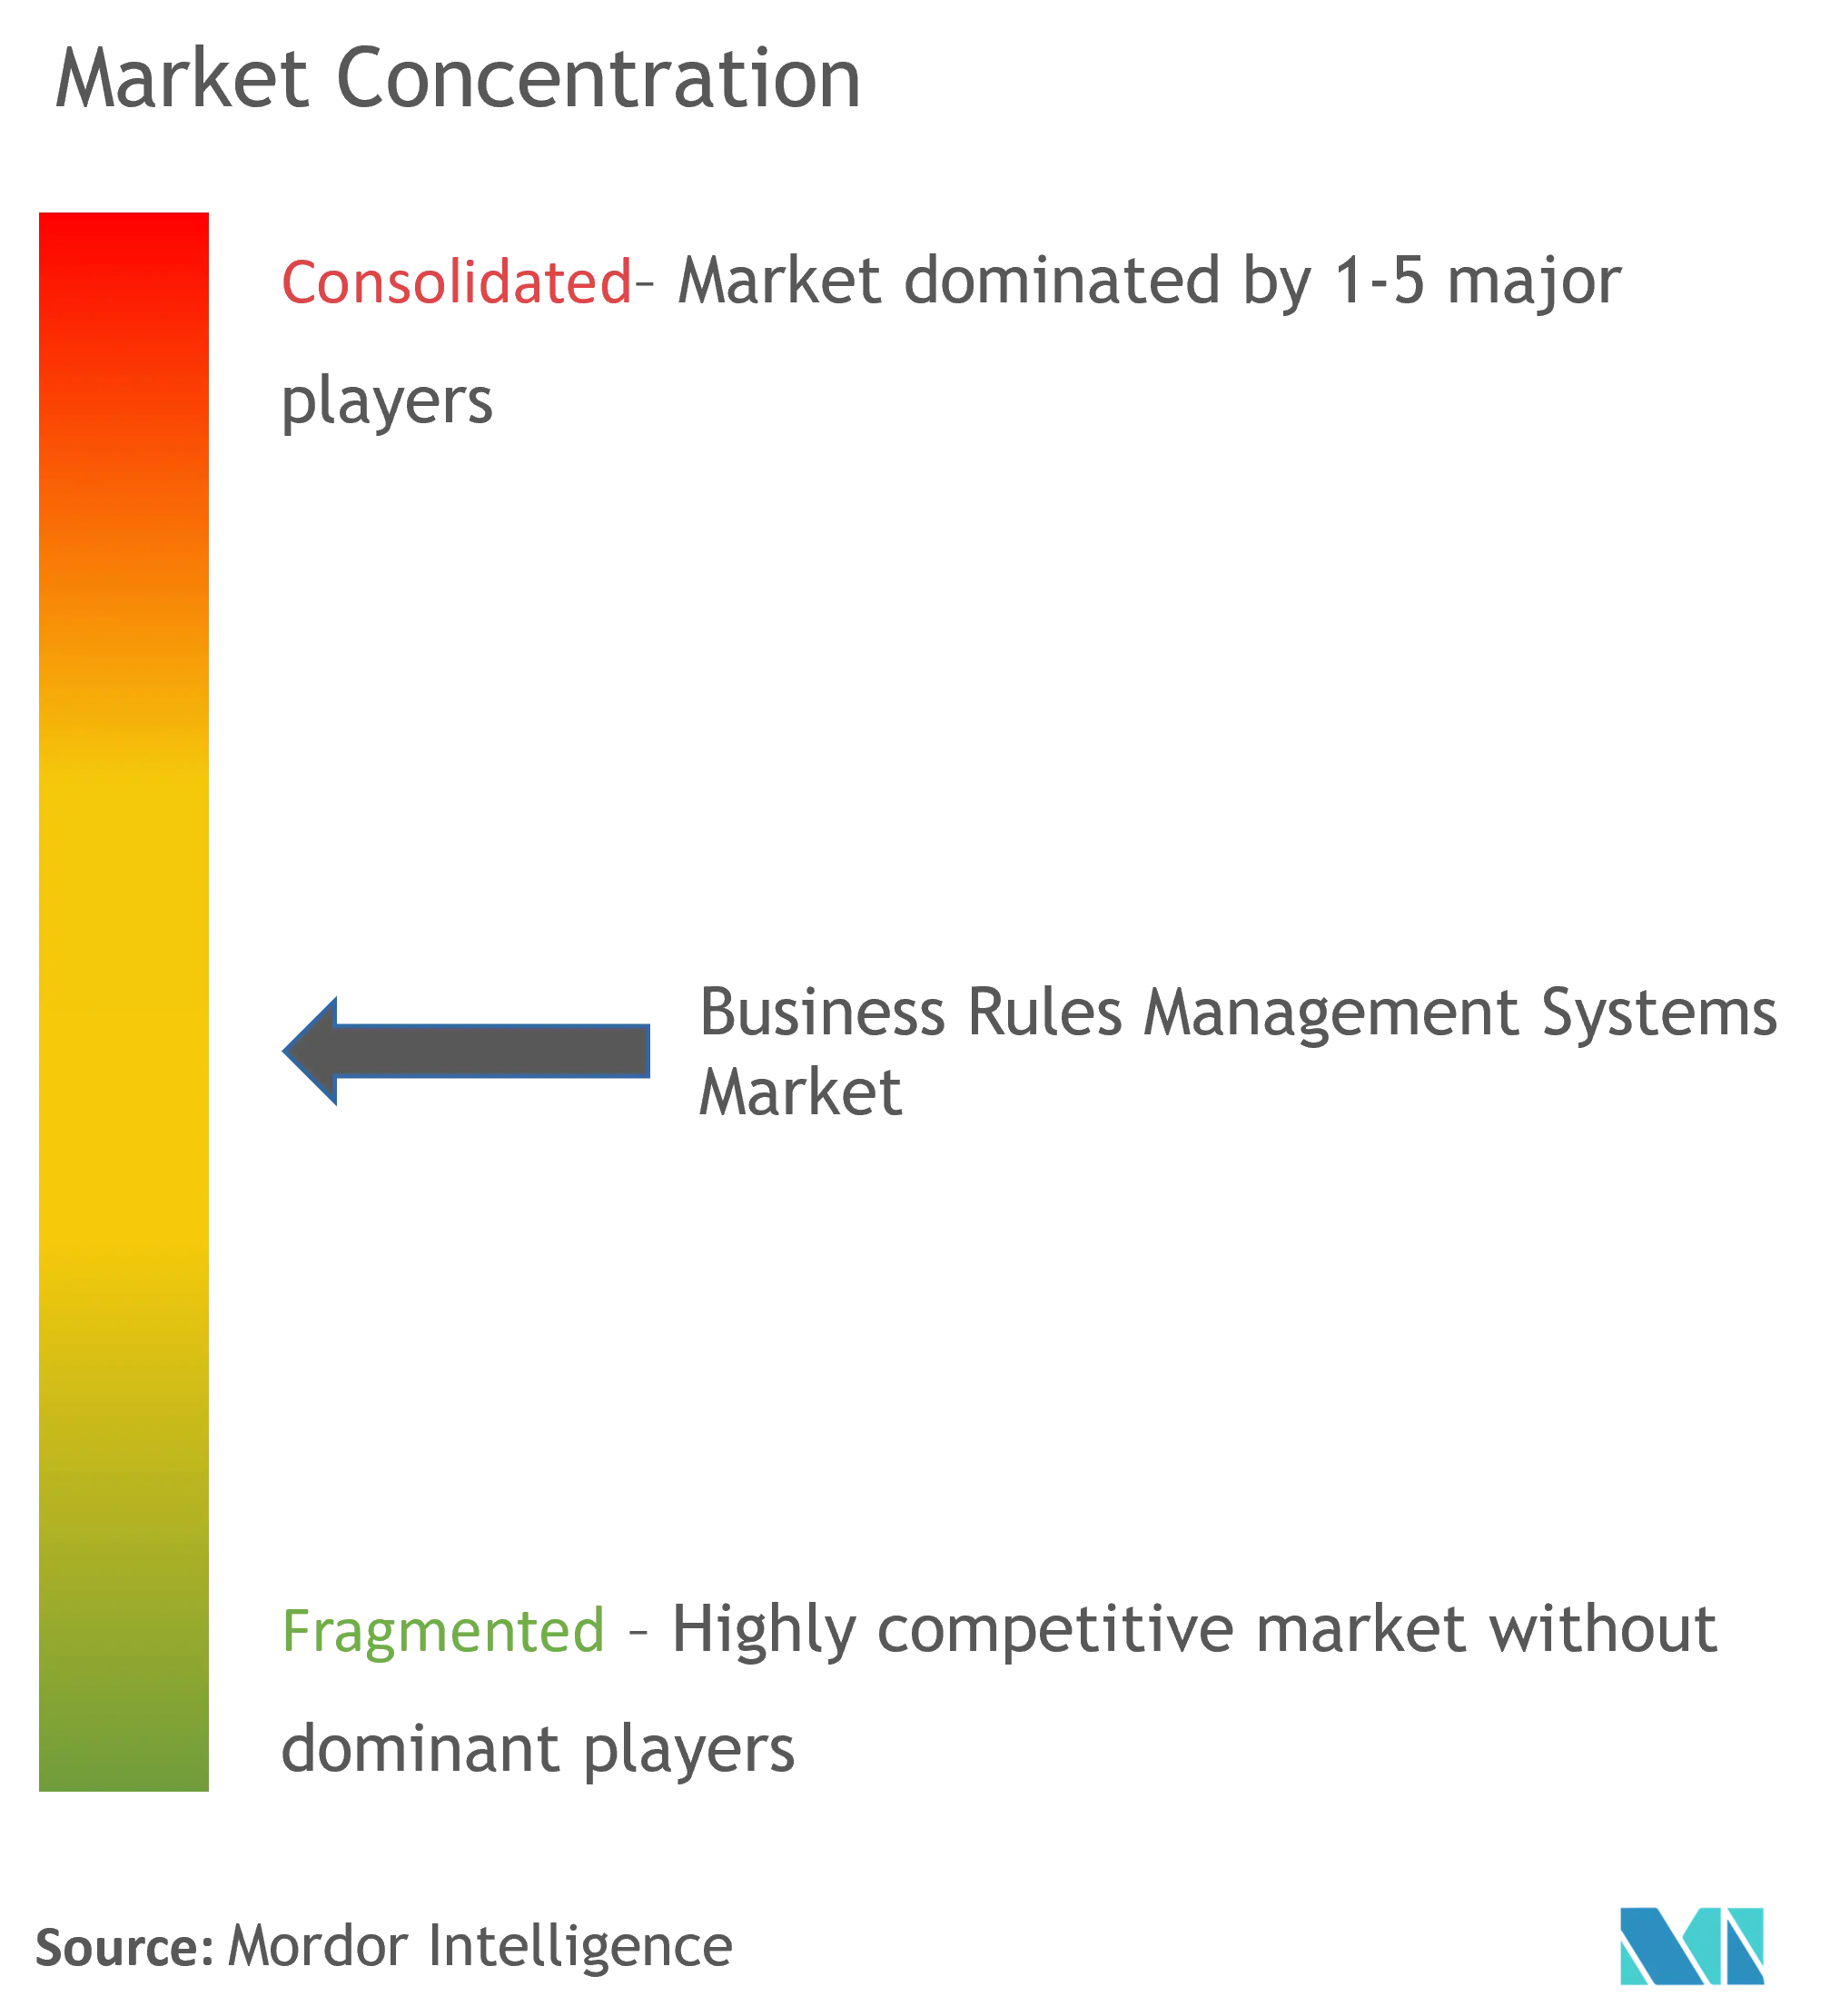 业务规则管理系统市场集中度